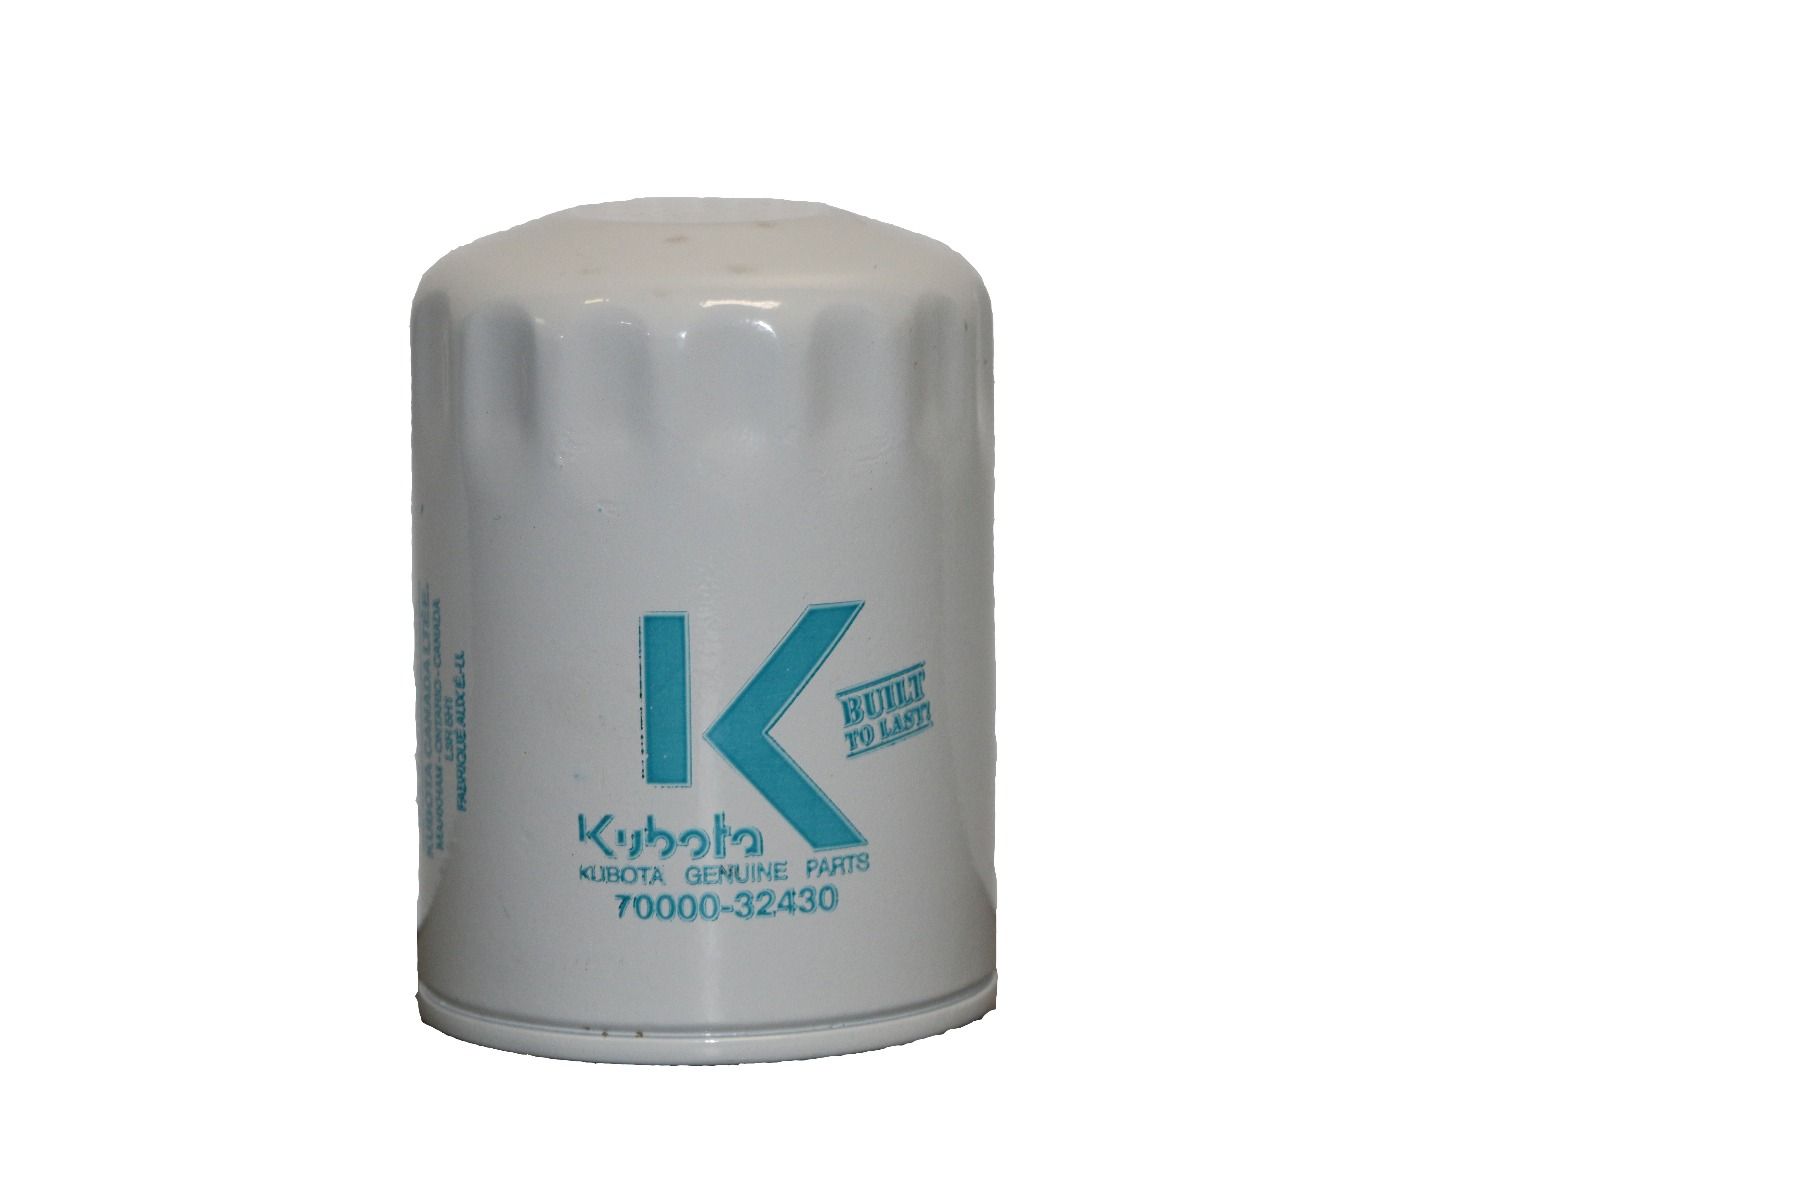 Kubota 70000-32430 Oil Filter Cartridge